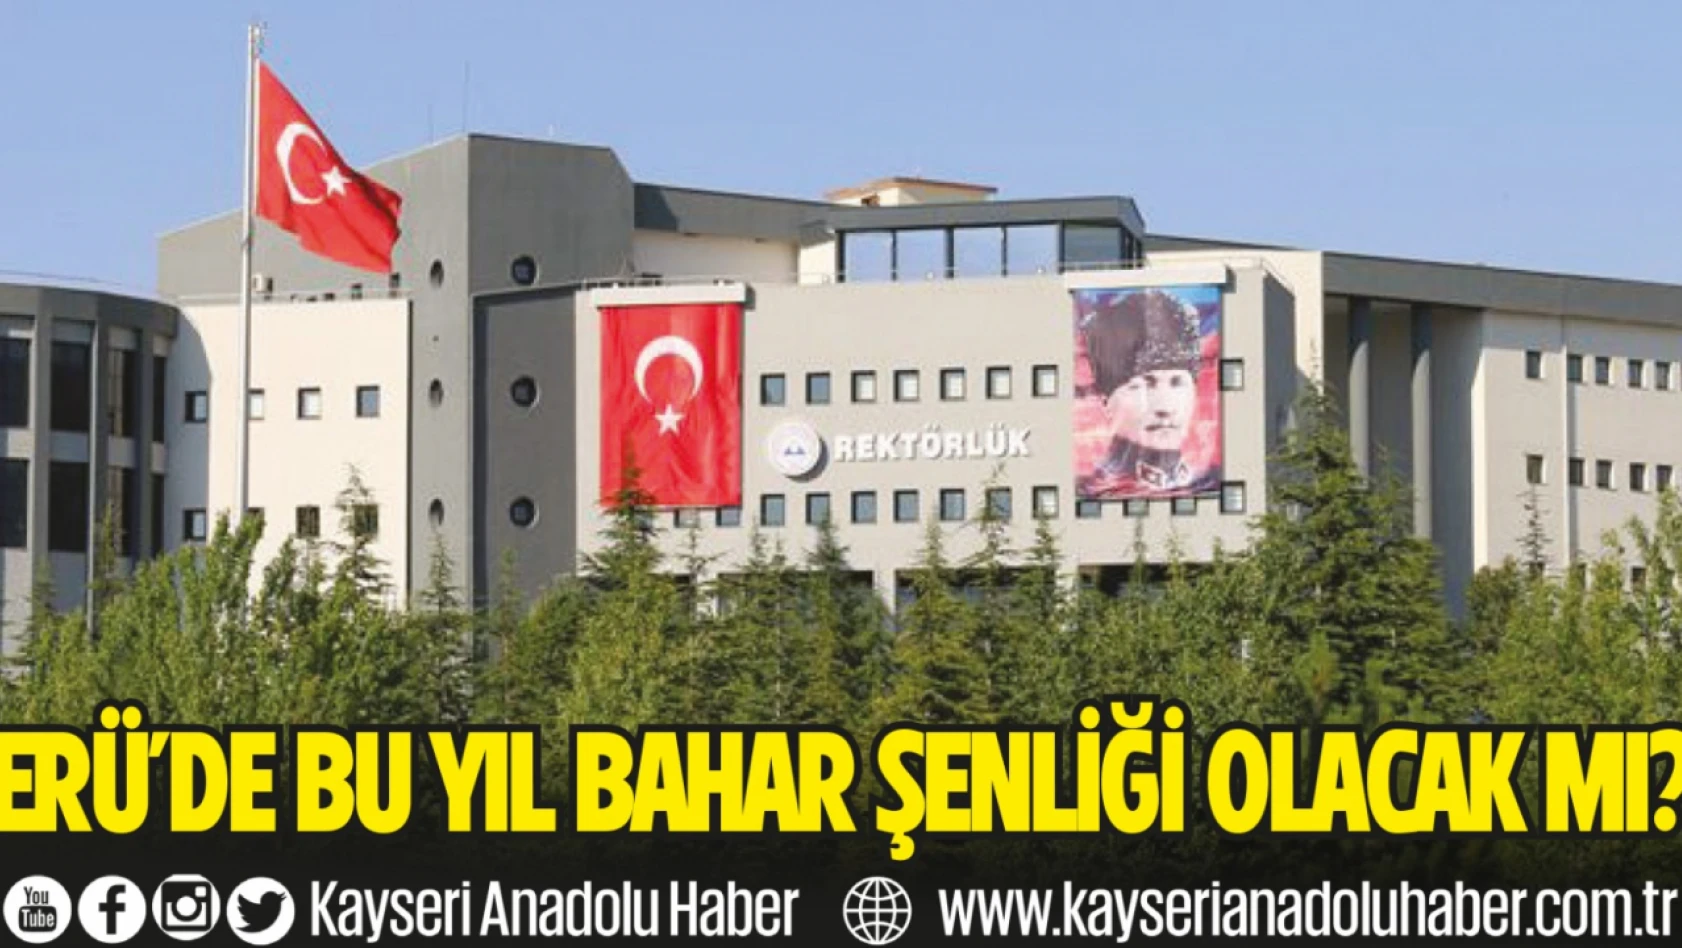 Erciyes Üniversitesi'nde Bahar Şenlikleri yapılacak mı?